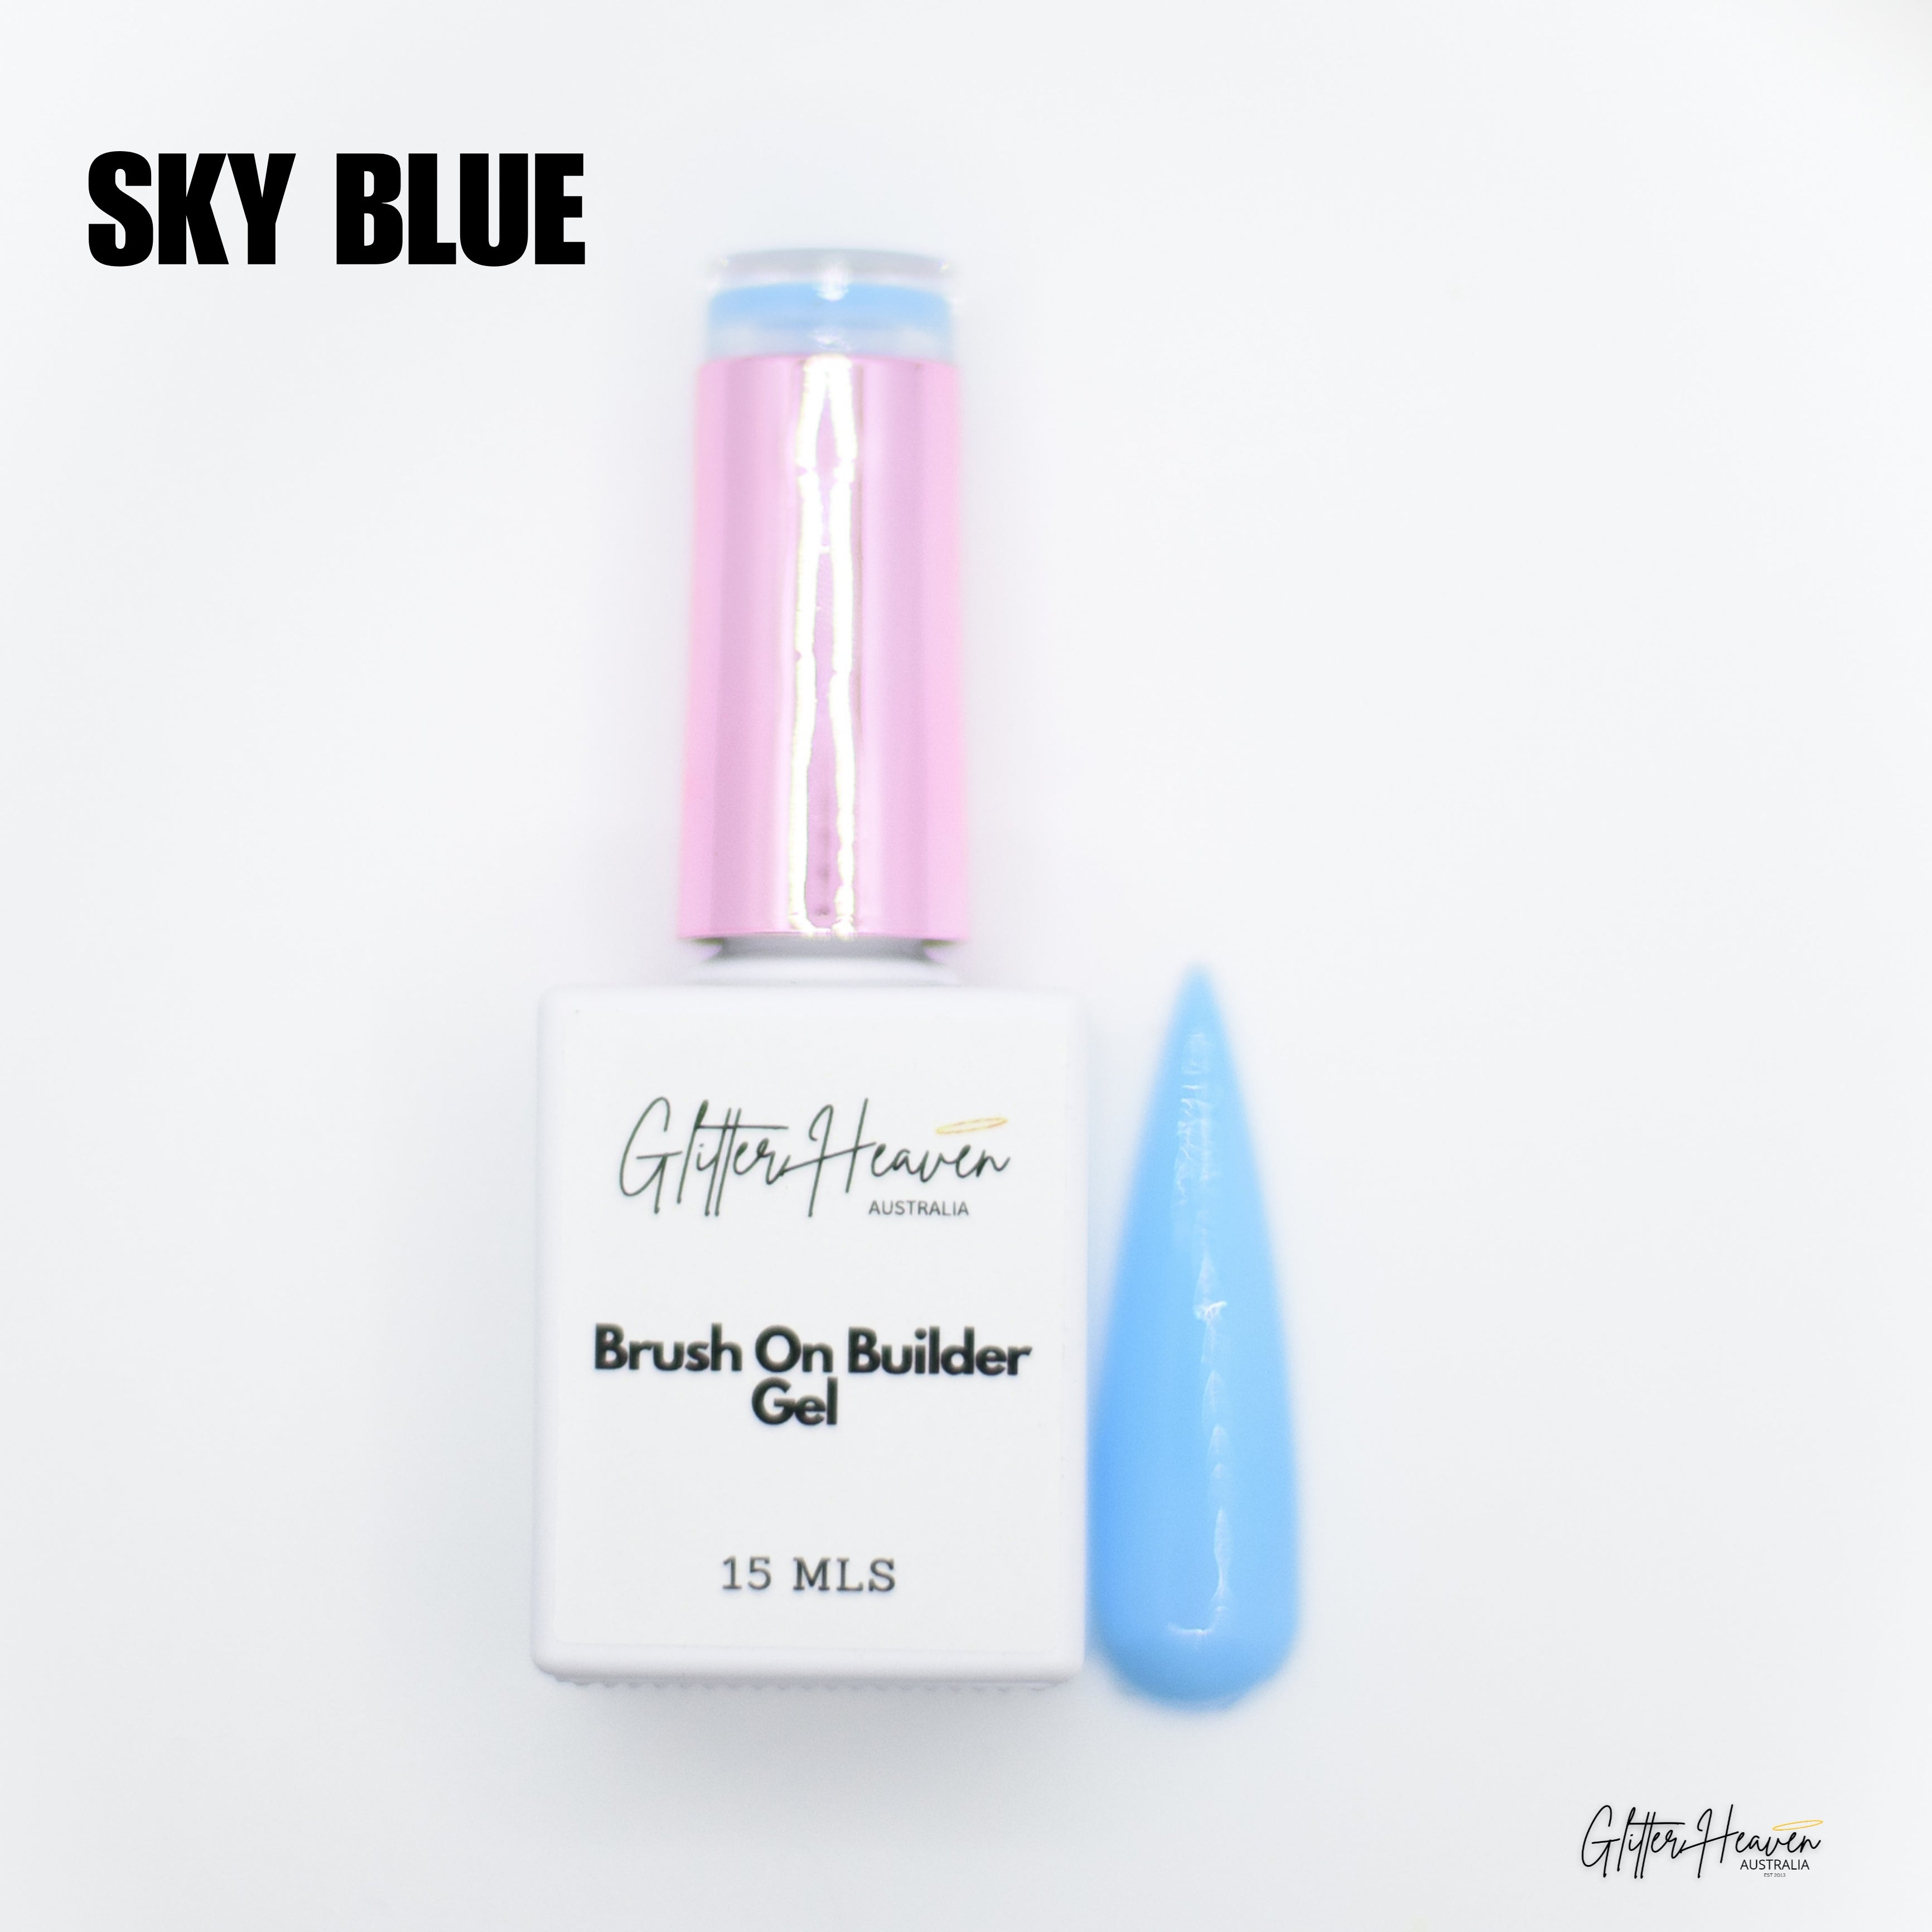 Sky Blue Brush On Builder Gel